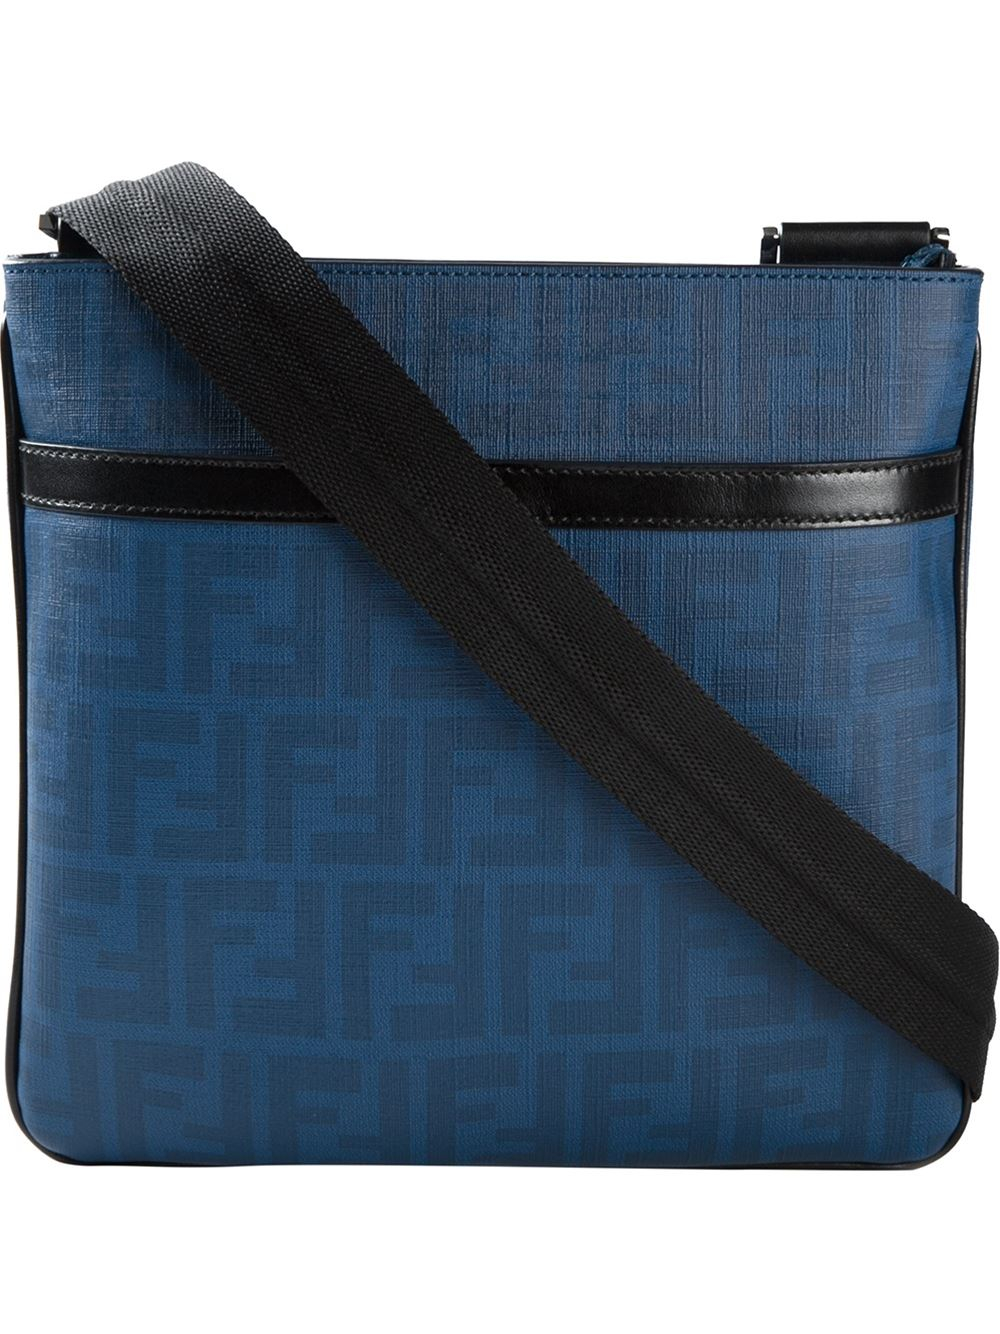 Fendi Zucca Messenger Bag in Blue for Men - Lyst